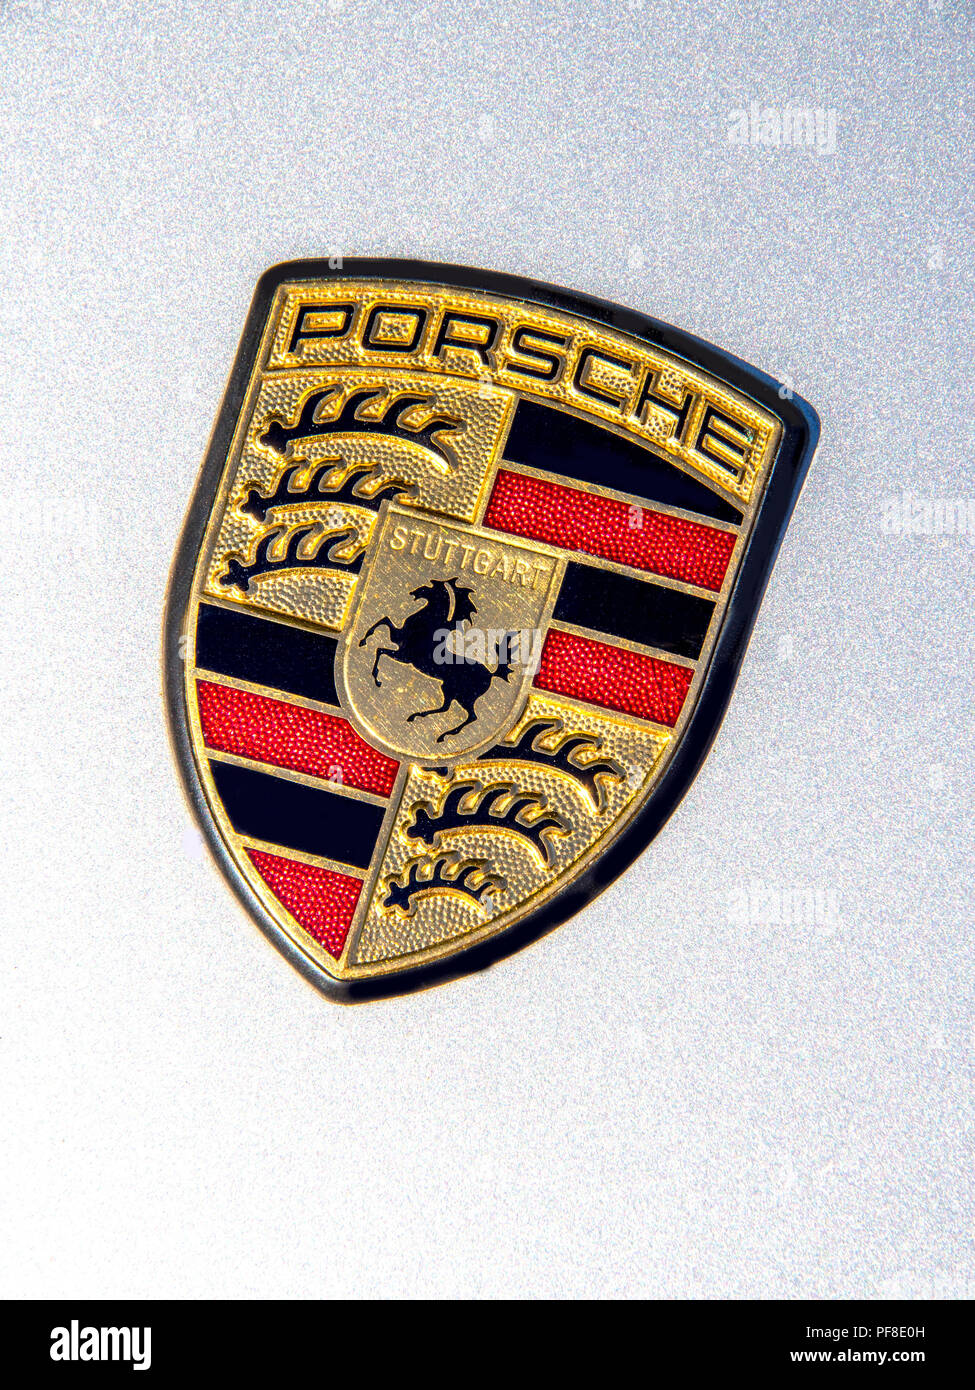 Porsche Zeichen auf der Motorhaube Stockfotografie - Alamy